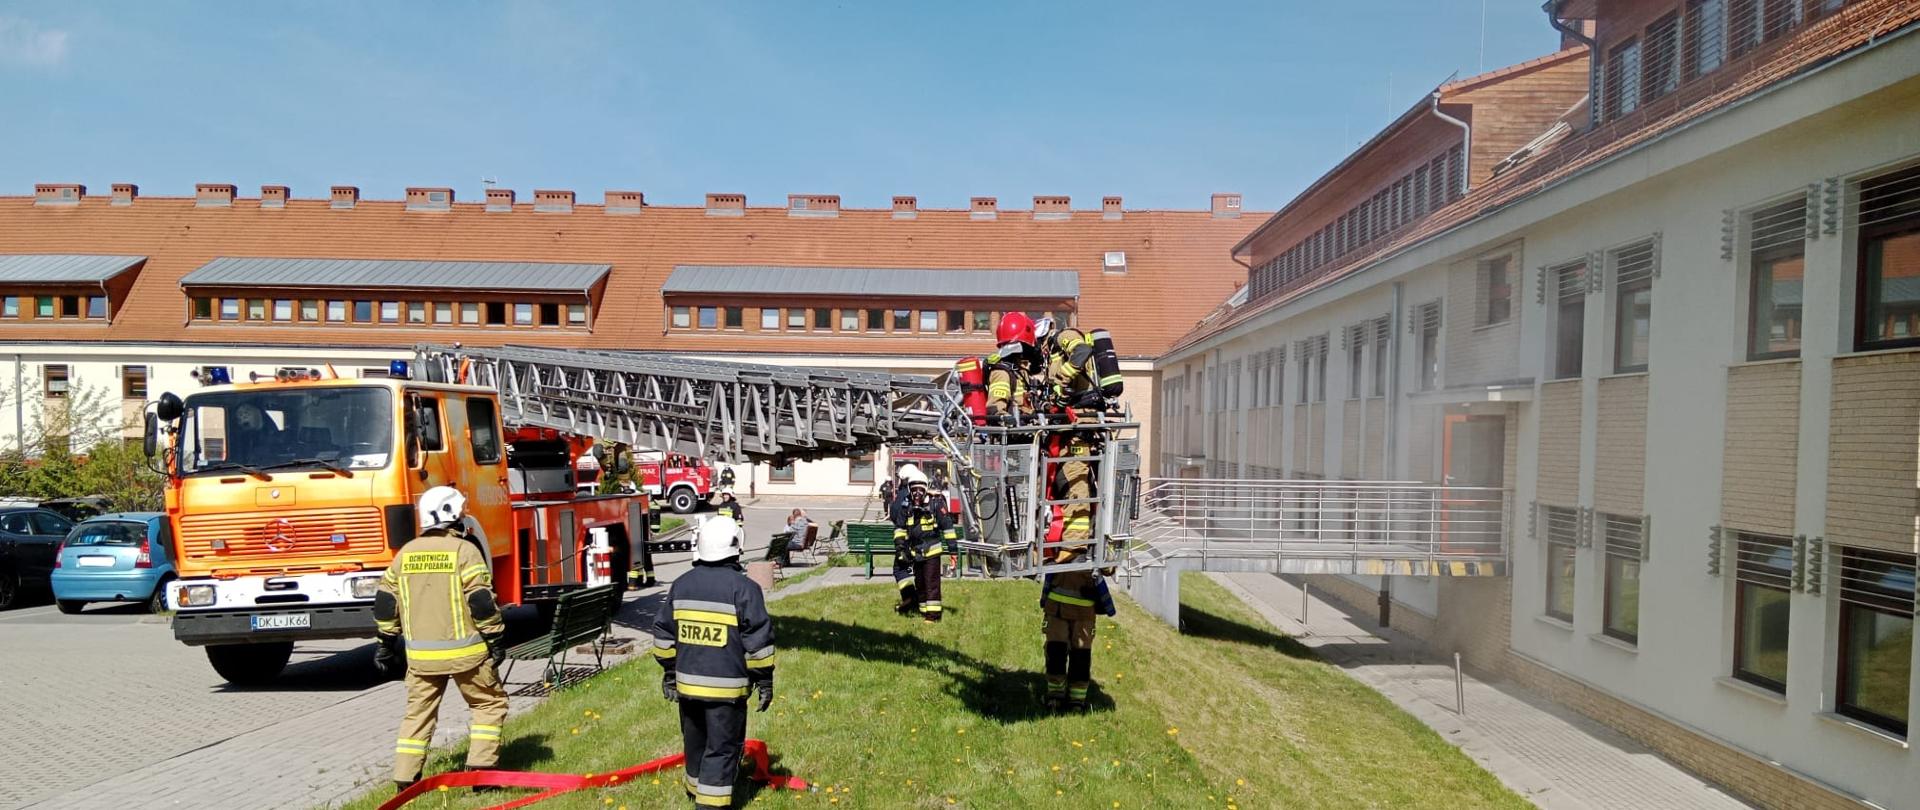 Plac przed budynkiem szpitala. W koszu podnośnika stoi dwóch strażaków. Wokół podnośnika stoją strażacy biorący udział w ćwiczeniach.